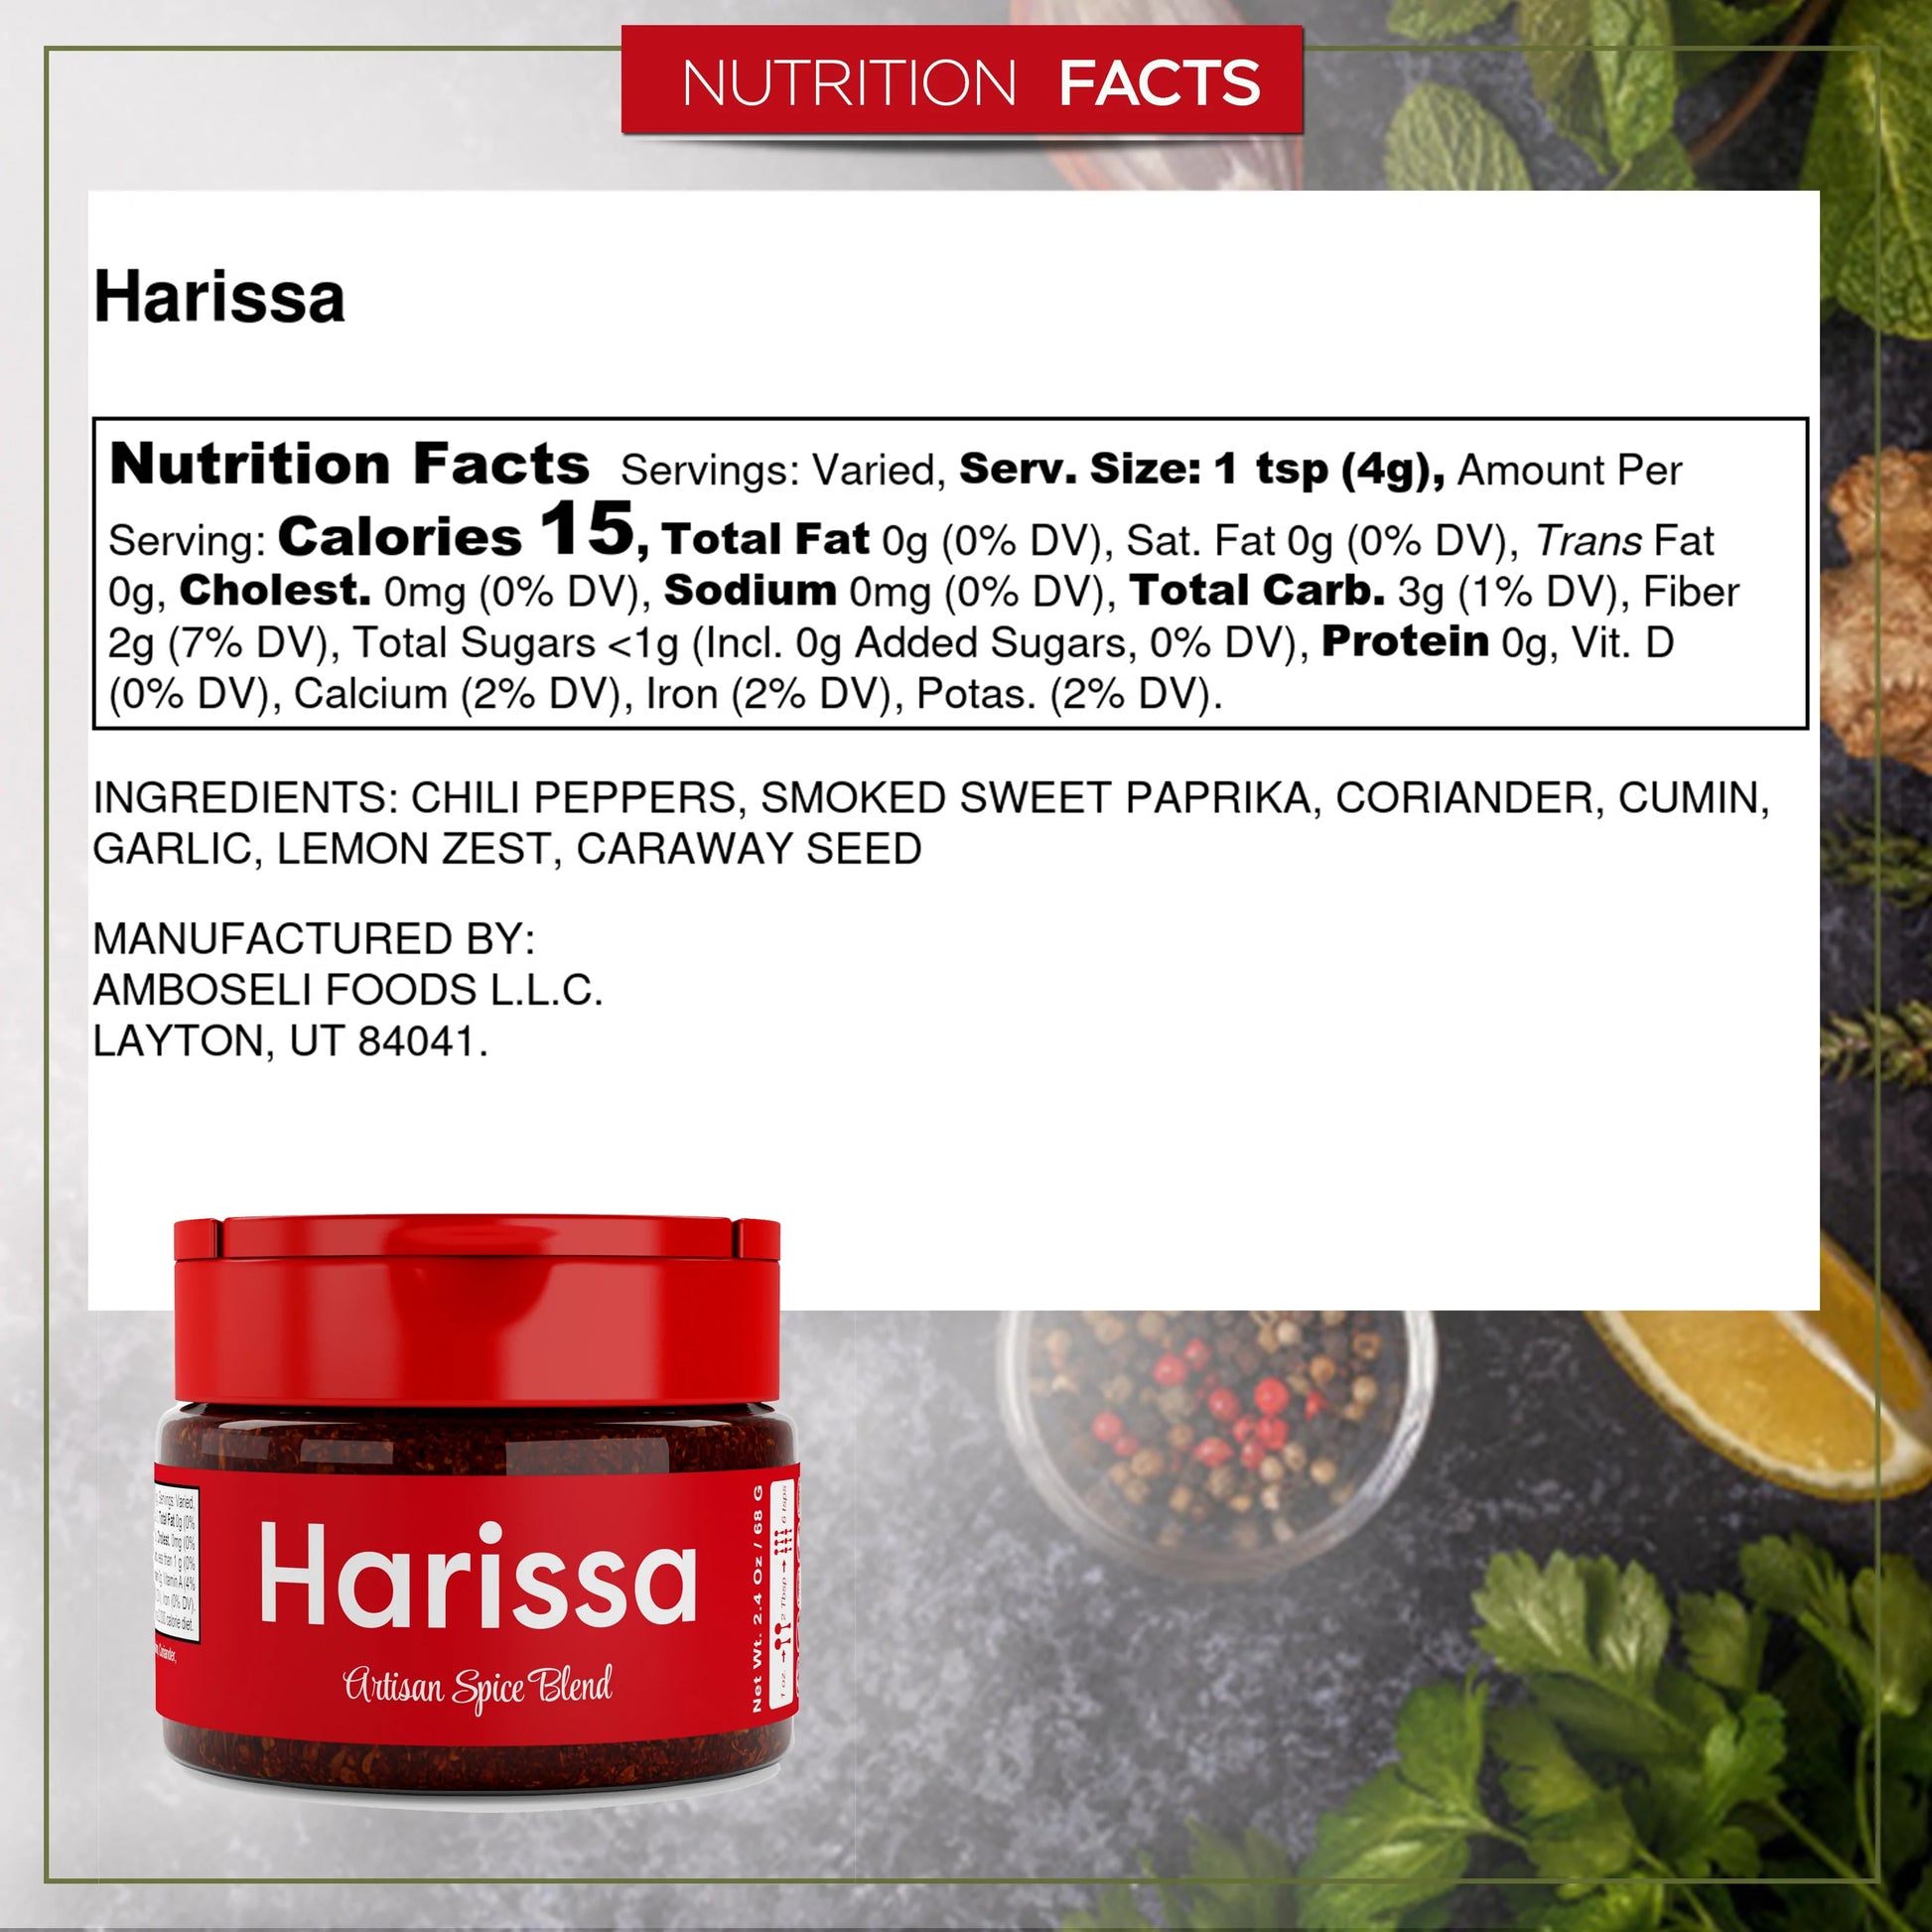 Harissa Spice - USimplySeason